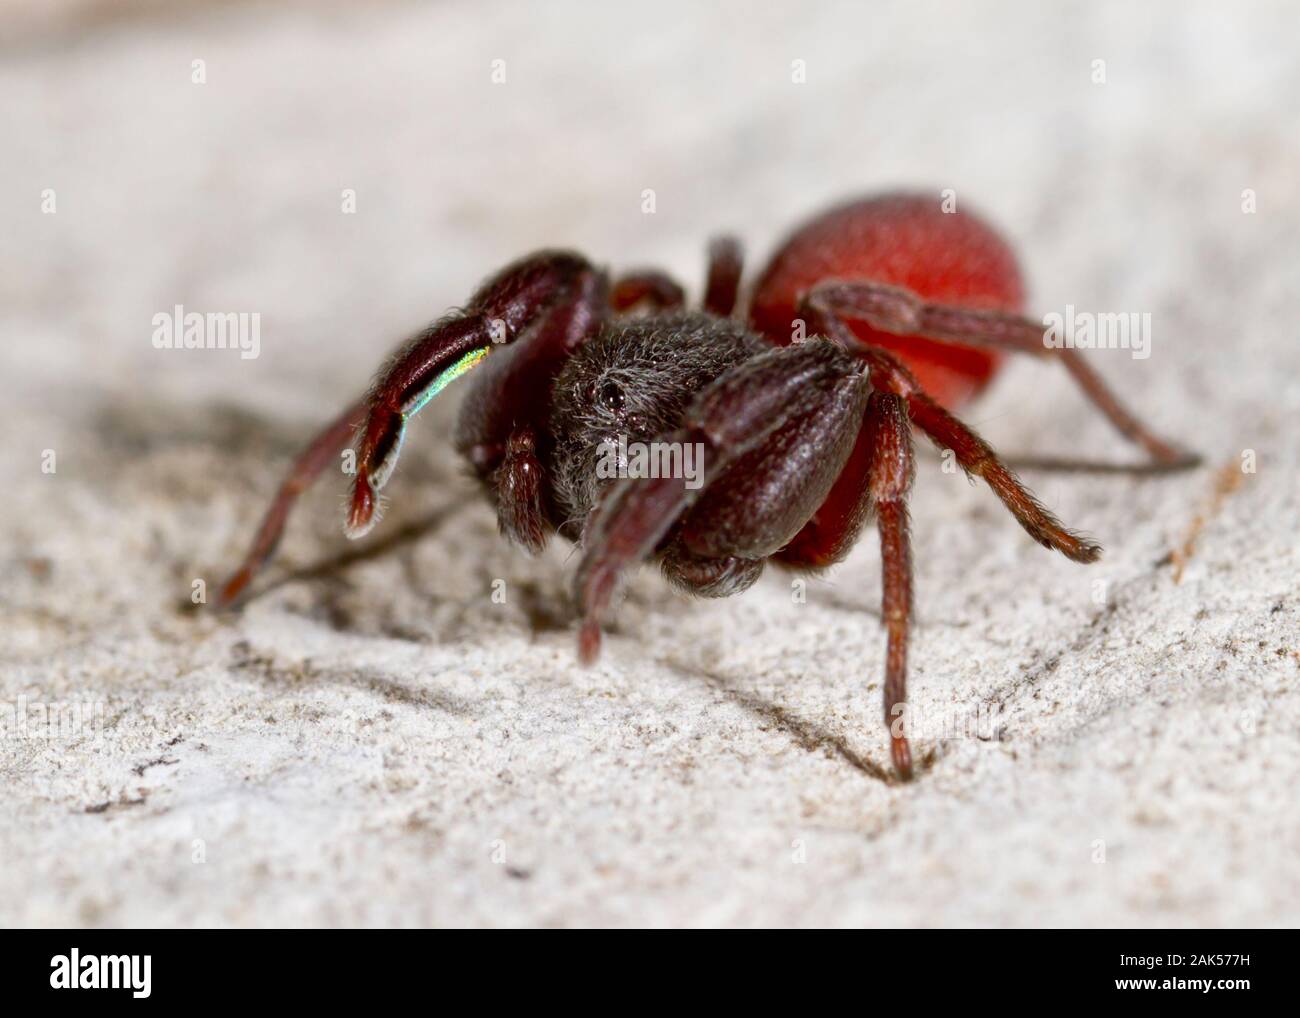 Palpimanus gibbulus - hembra. Recientemente se ha vuelto conocido como una araña araña de caza que puede matar a otros feroz tierra viven arañas tan grande Foto de stock